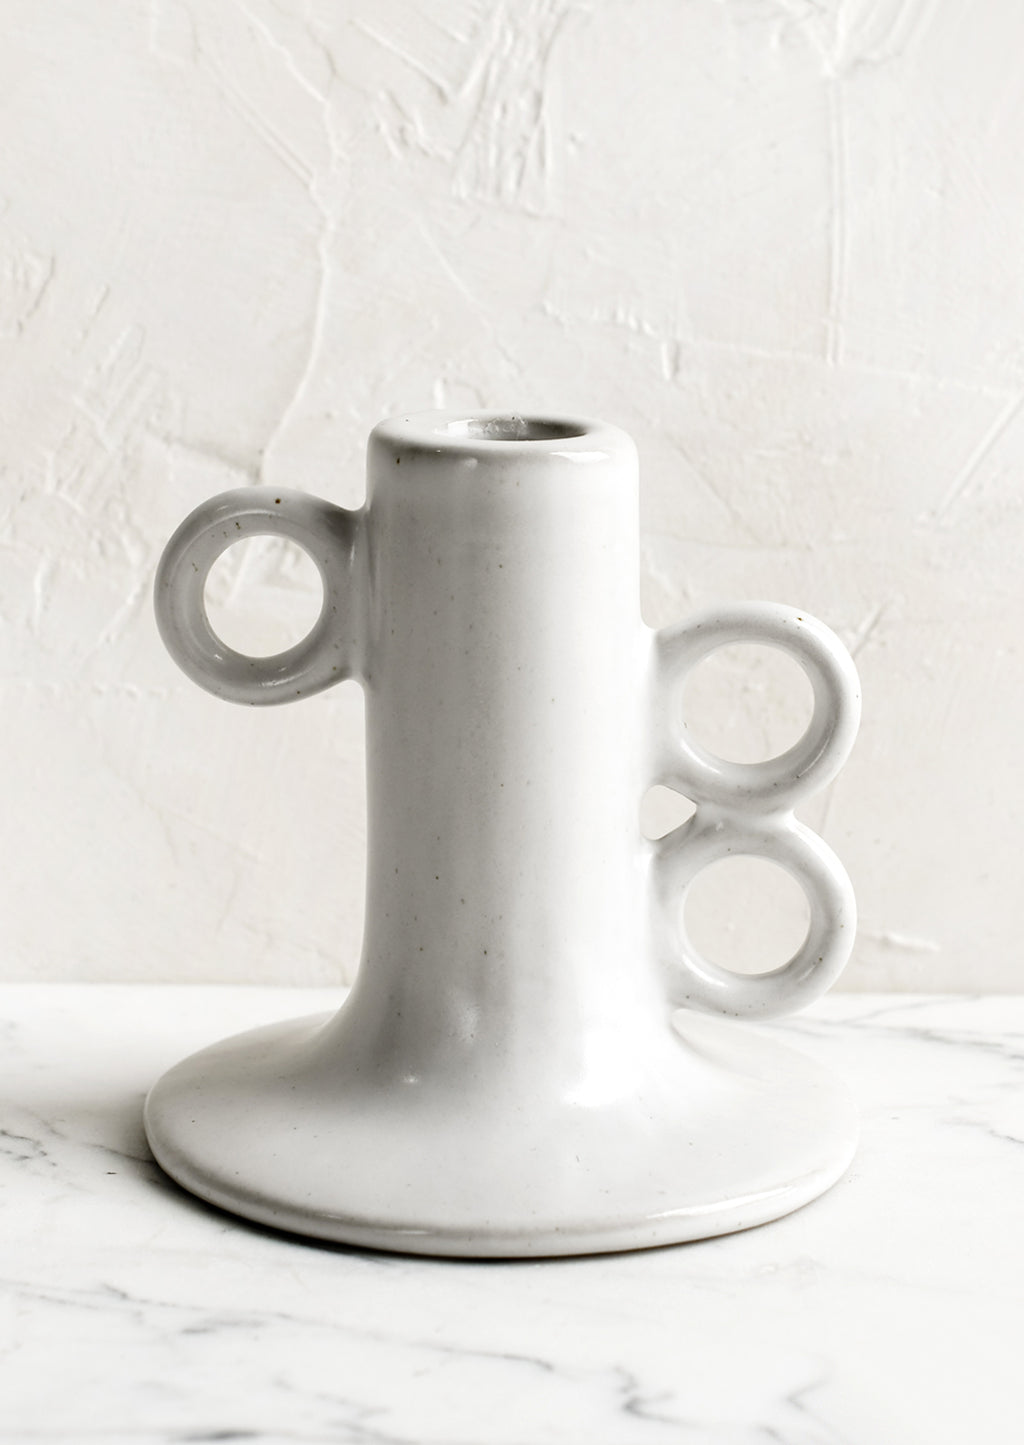 1: A sculptural taper candle holder in white ceramic.